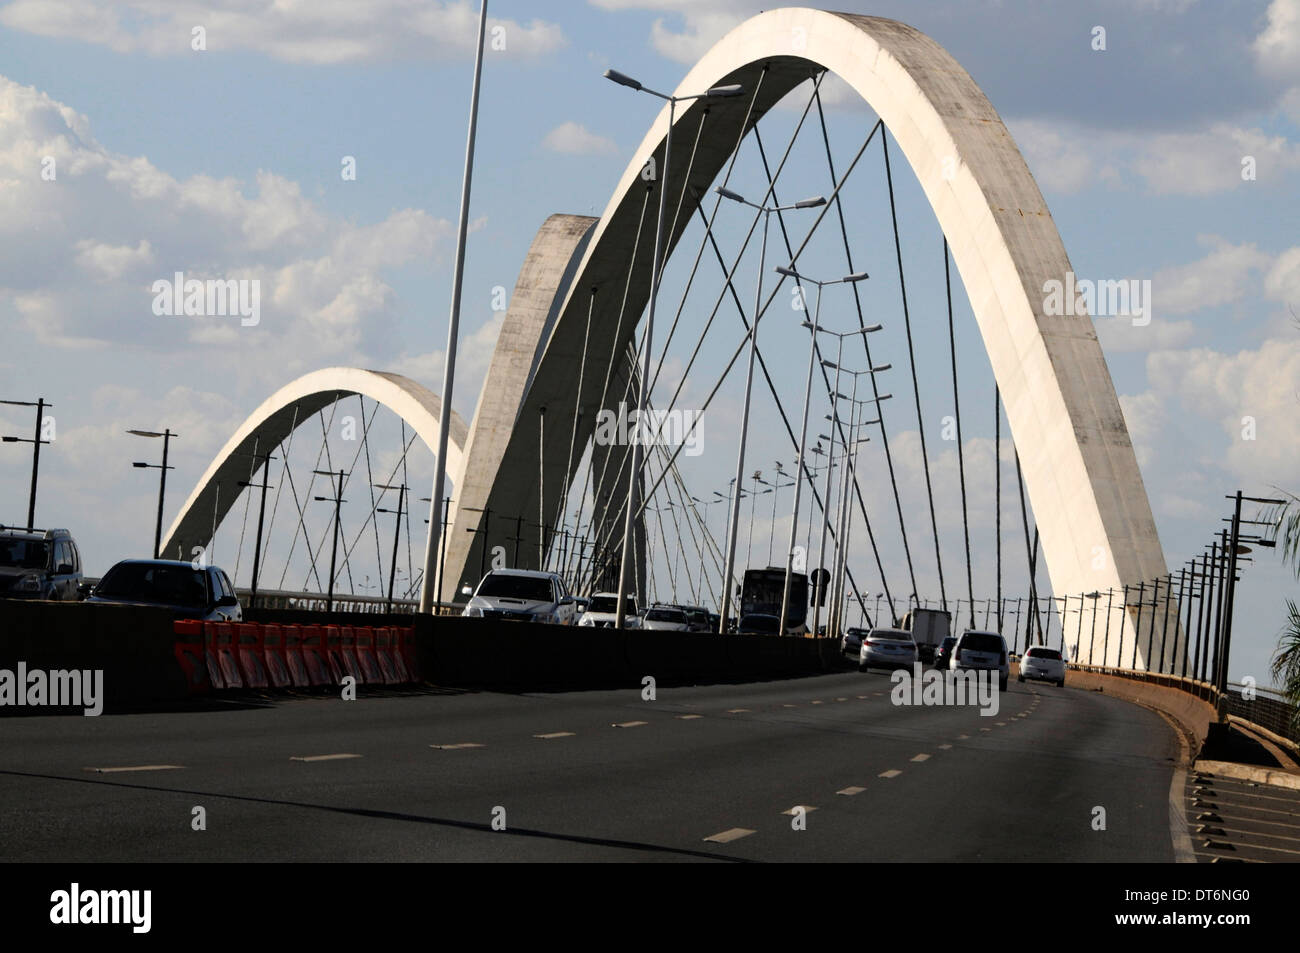 Le pont Justcelino Kubitschek, également connu sous le nom de pont Président JK ou de pont JK, traverse le lac Paranoa, un lac artificiel à Brasilia, au Brésil. Banque D'Images